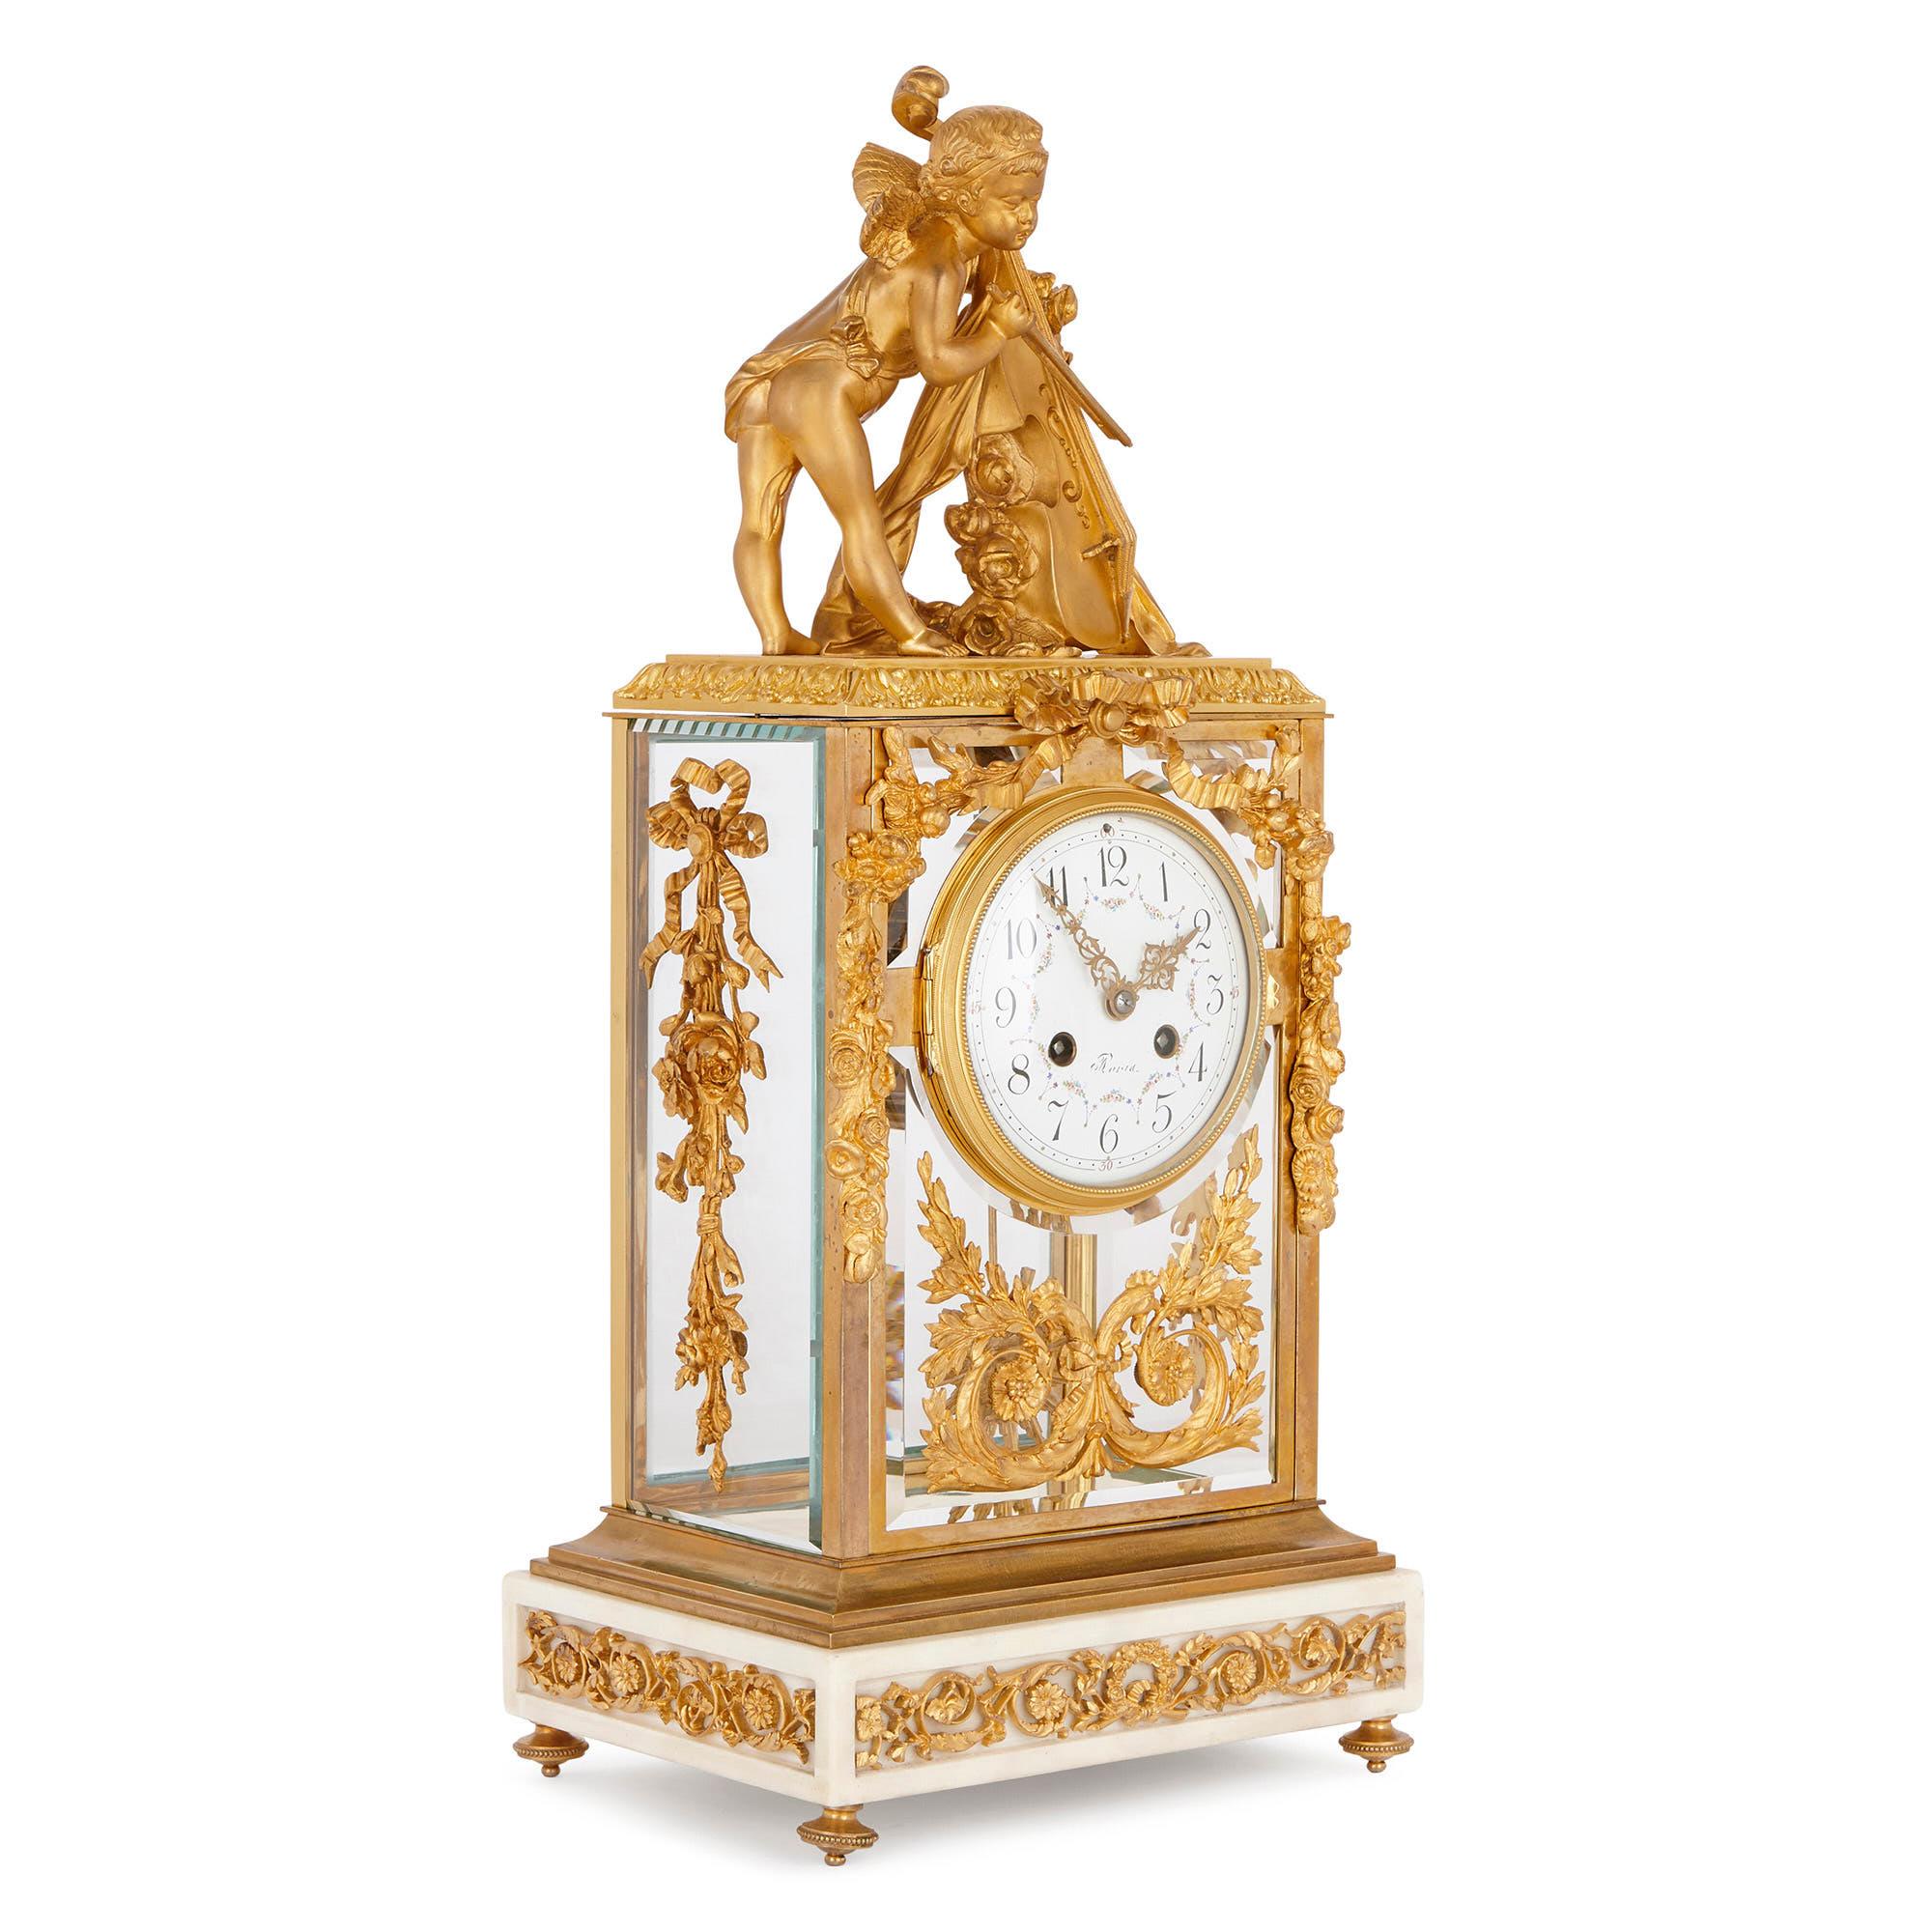 Diese französische Kaminuhr ist in einem eleganten neoklassizistischen Stil gehalten, der sich an den dekorativen Künsten der Epoche Ludwigs XVI. (1754-1793) orientiert. Diese Uhr sieht wunderschön aus, wenn sie auf einem Kaminsims oder an einer